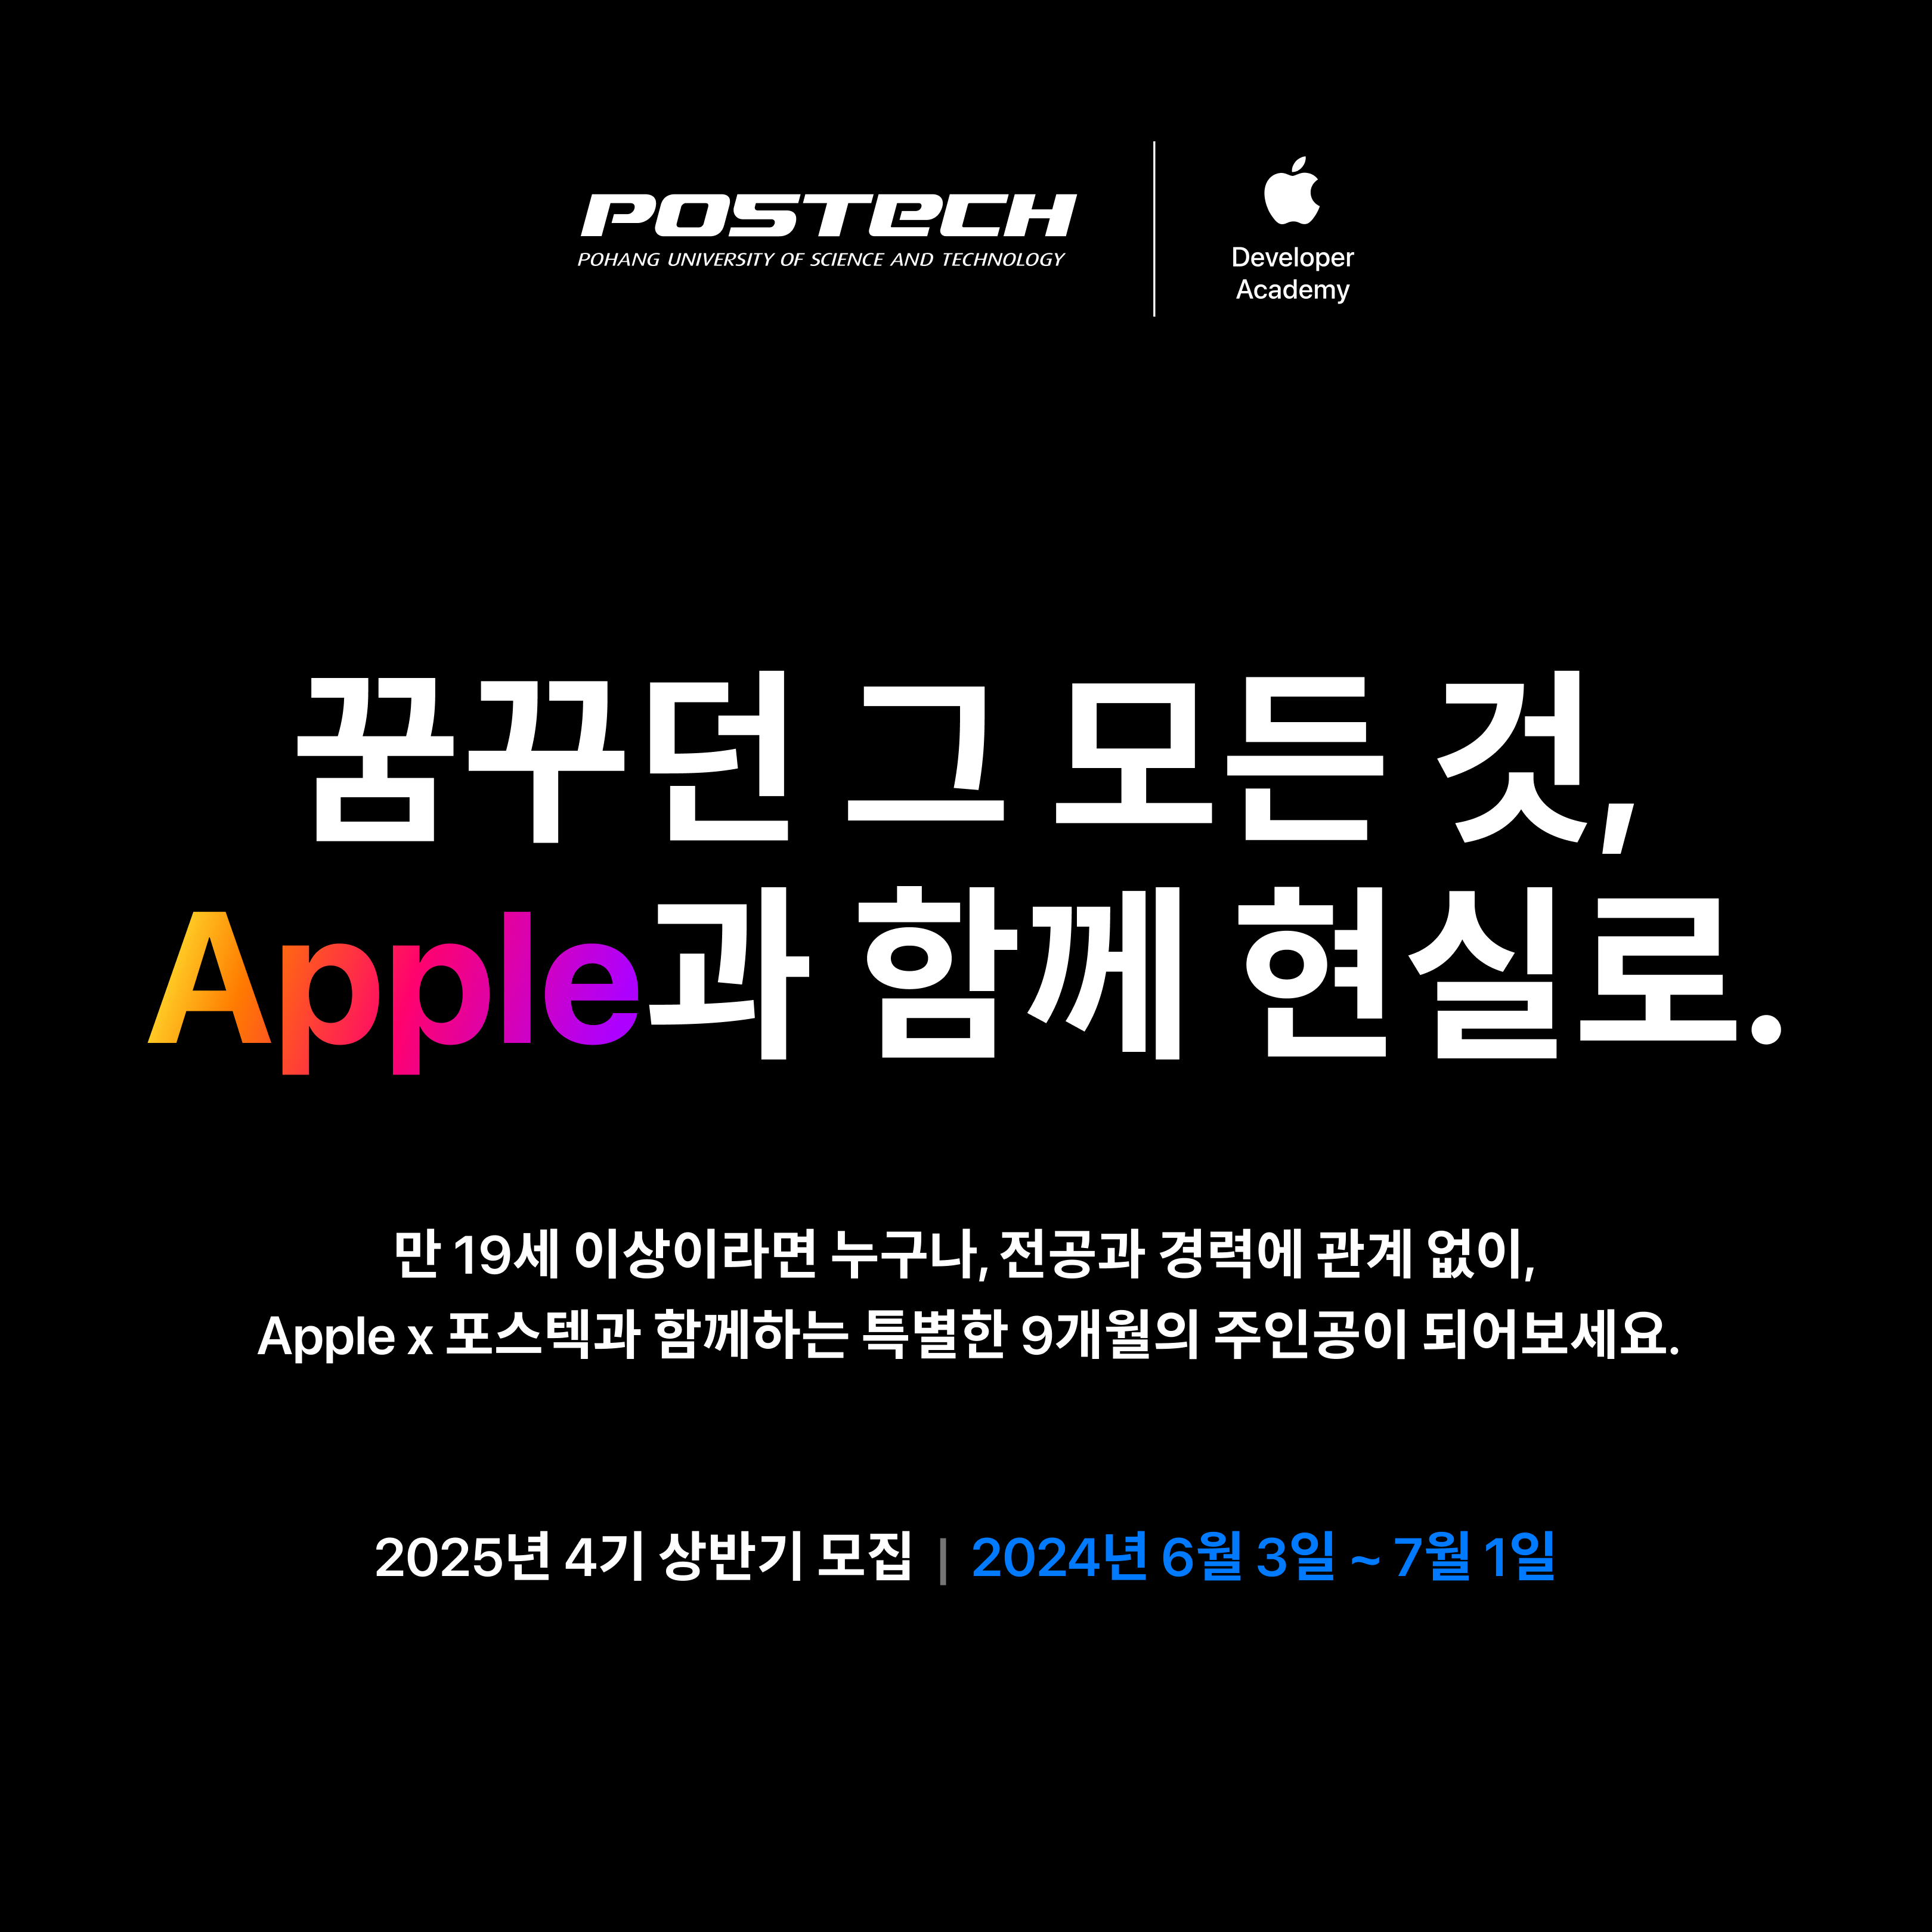 2025 애플 디벨로퍼 아카데미 4기 상반기 모집